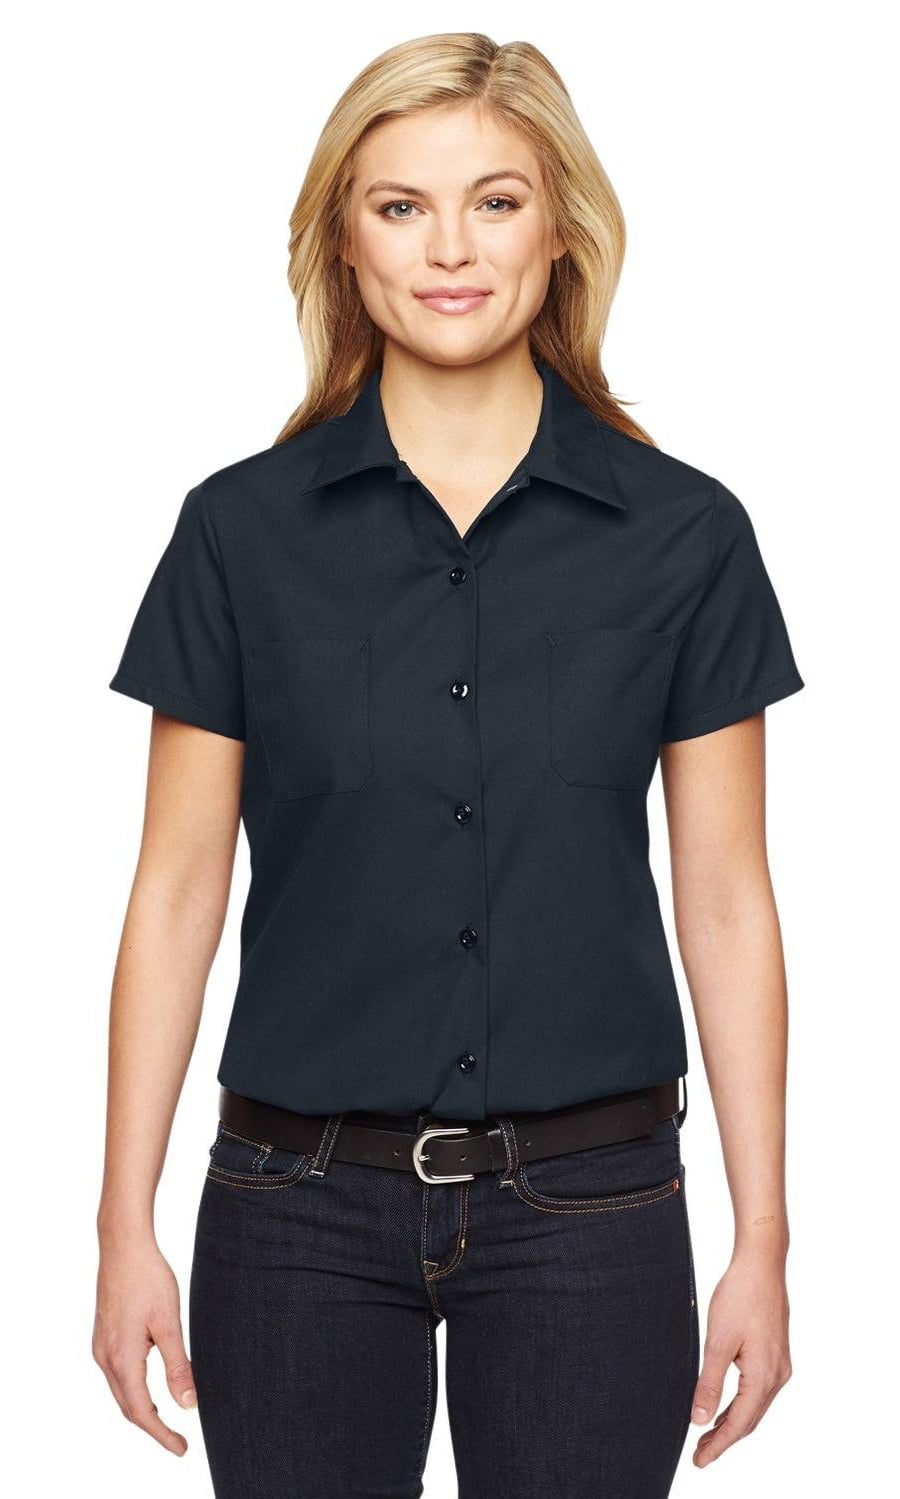 fs5350 women's short sleeve industrial work shirt - Walmart.com